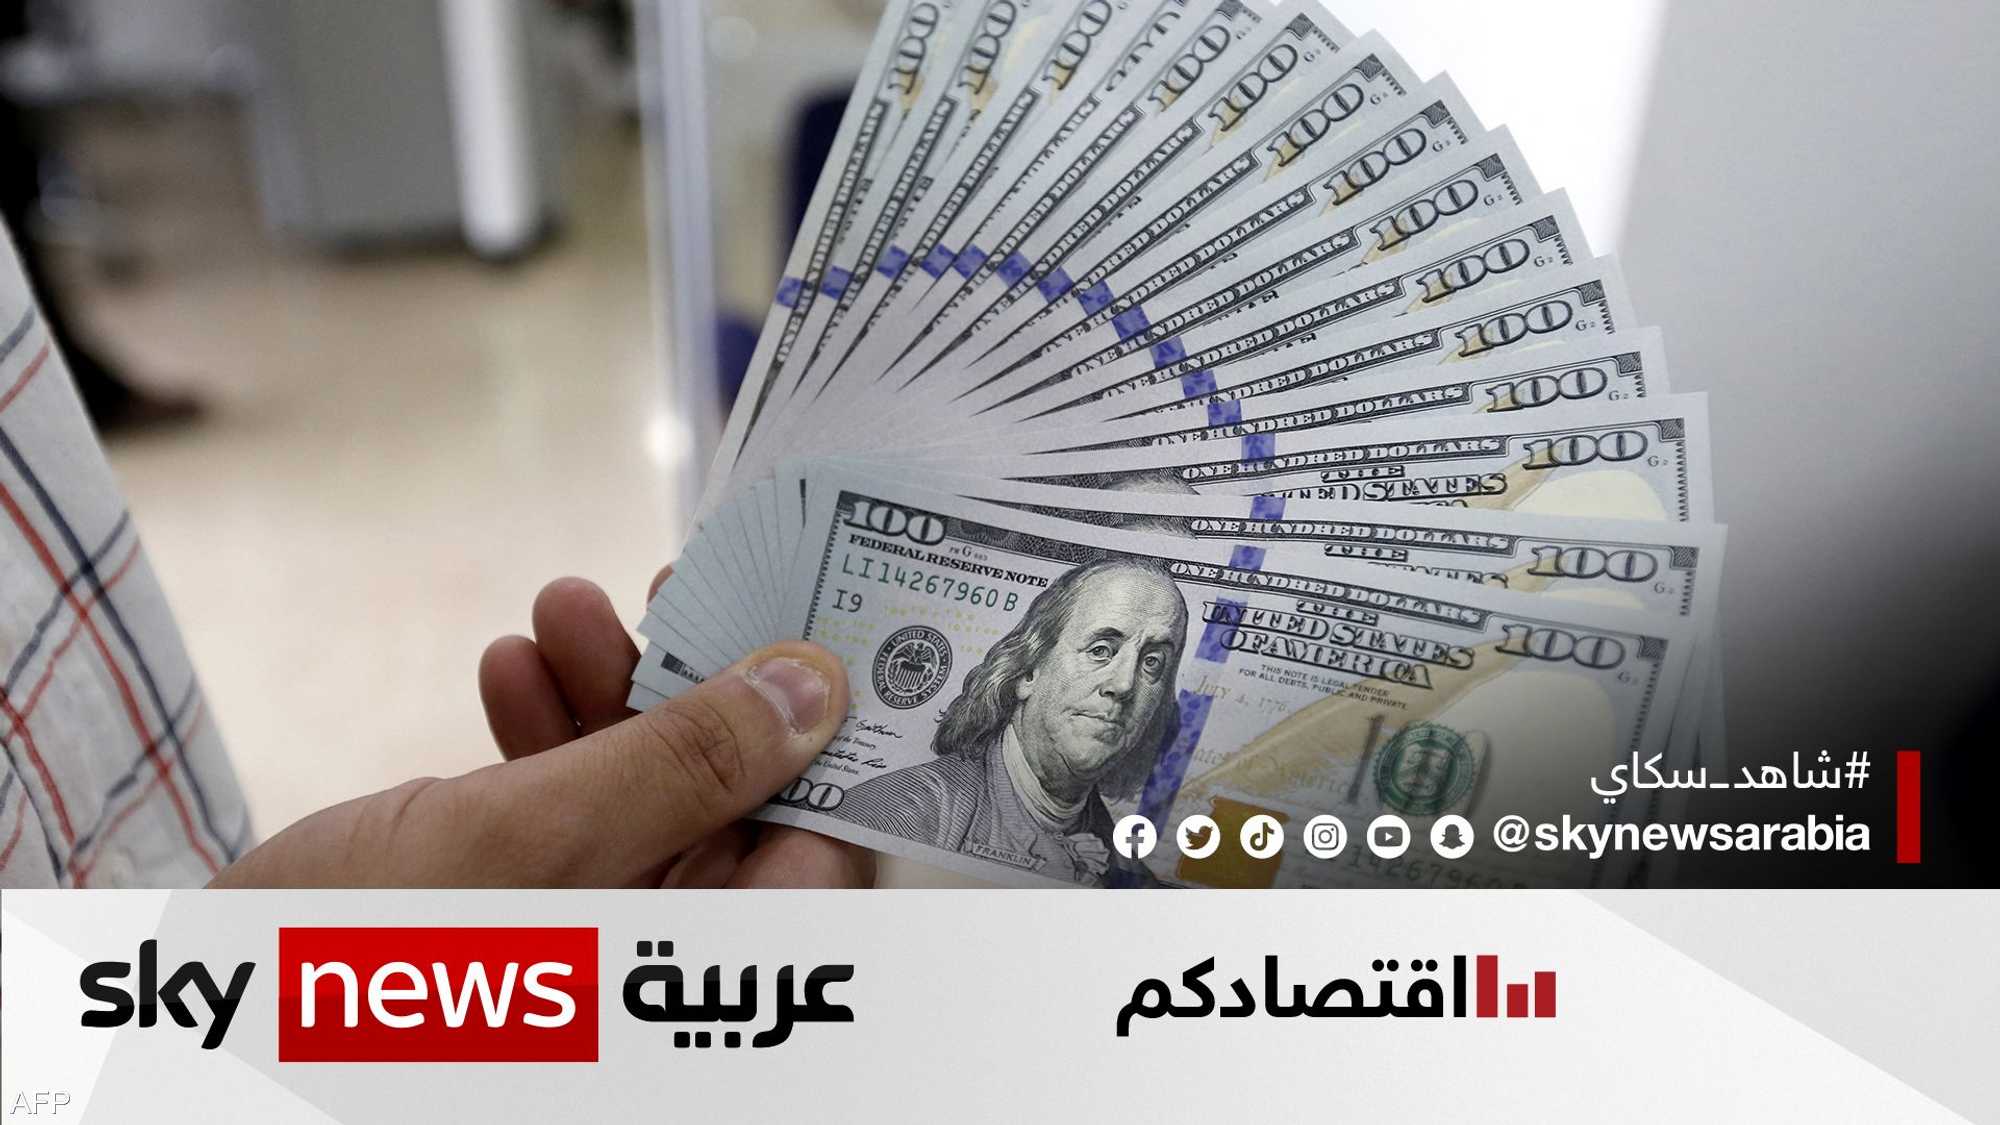 سر انخفاض الدينار العراقي رغم زيادة الاحتياطي النقدي الأجنبي